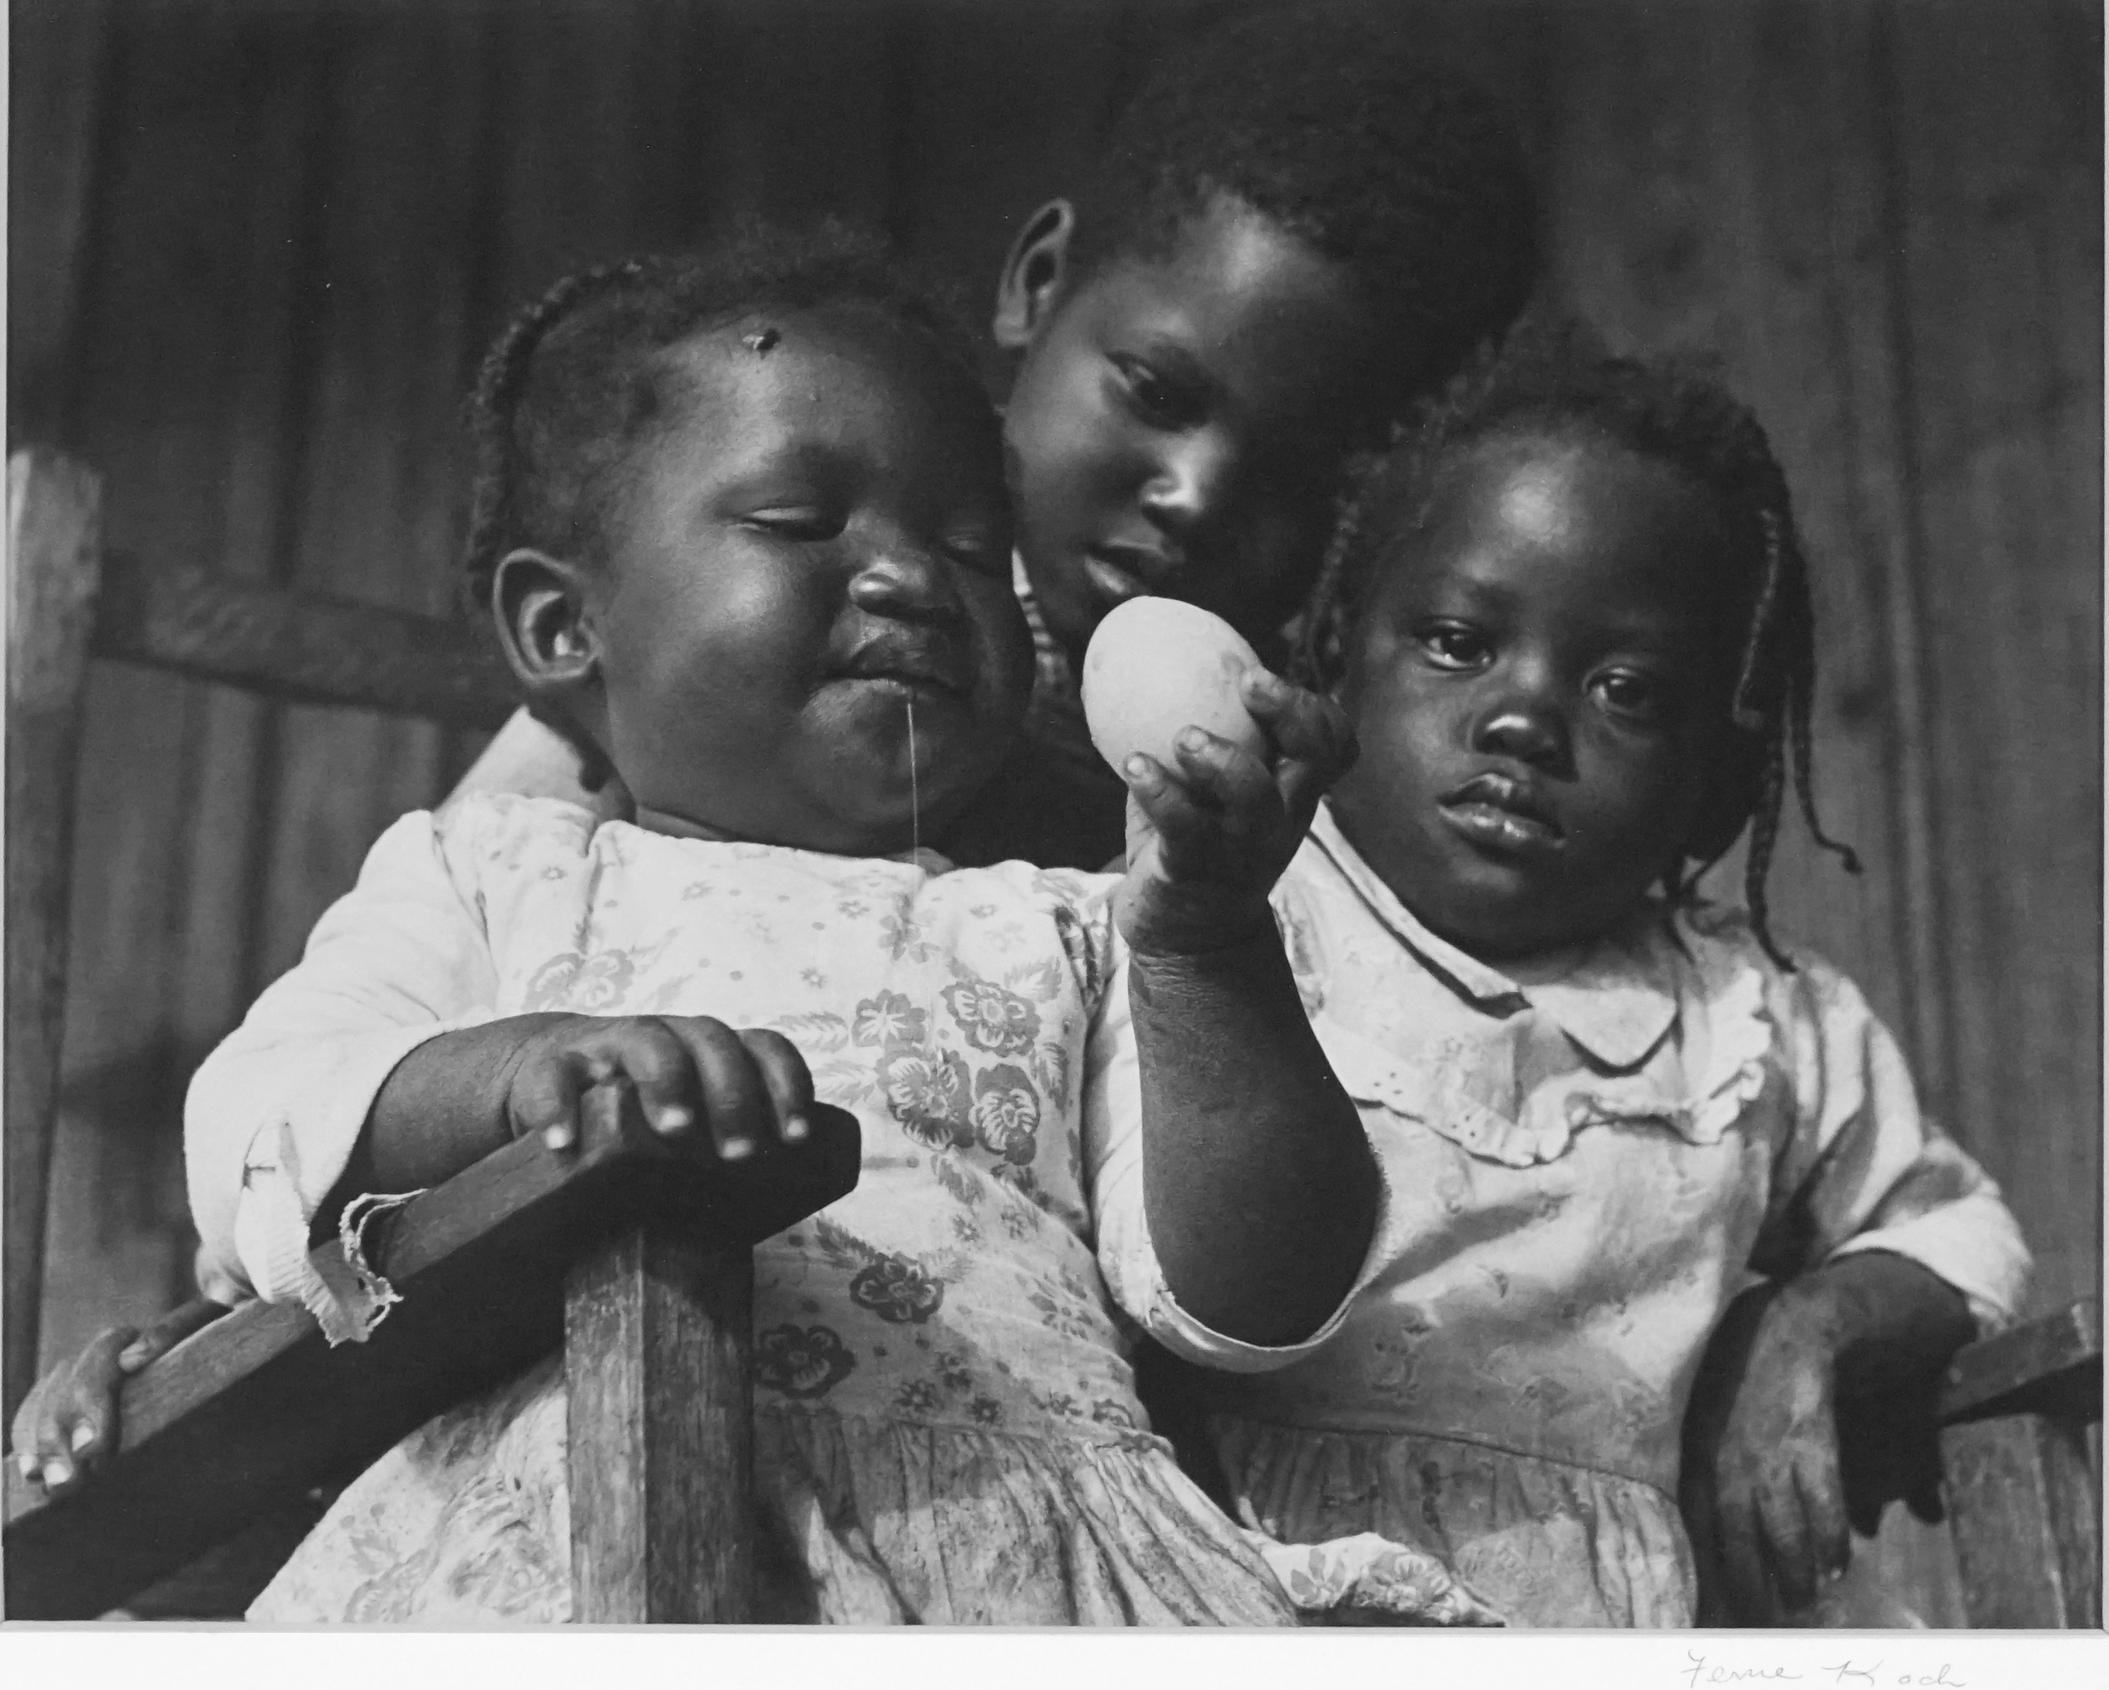 Ferne Koch Black and White Photograph - Easter Sunday, Black & White Photography, About life, Houston Foto Fest